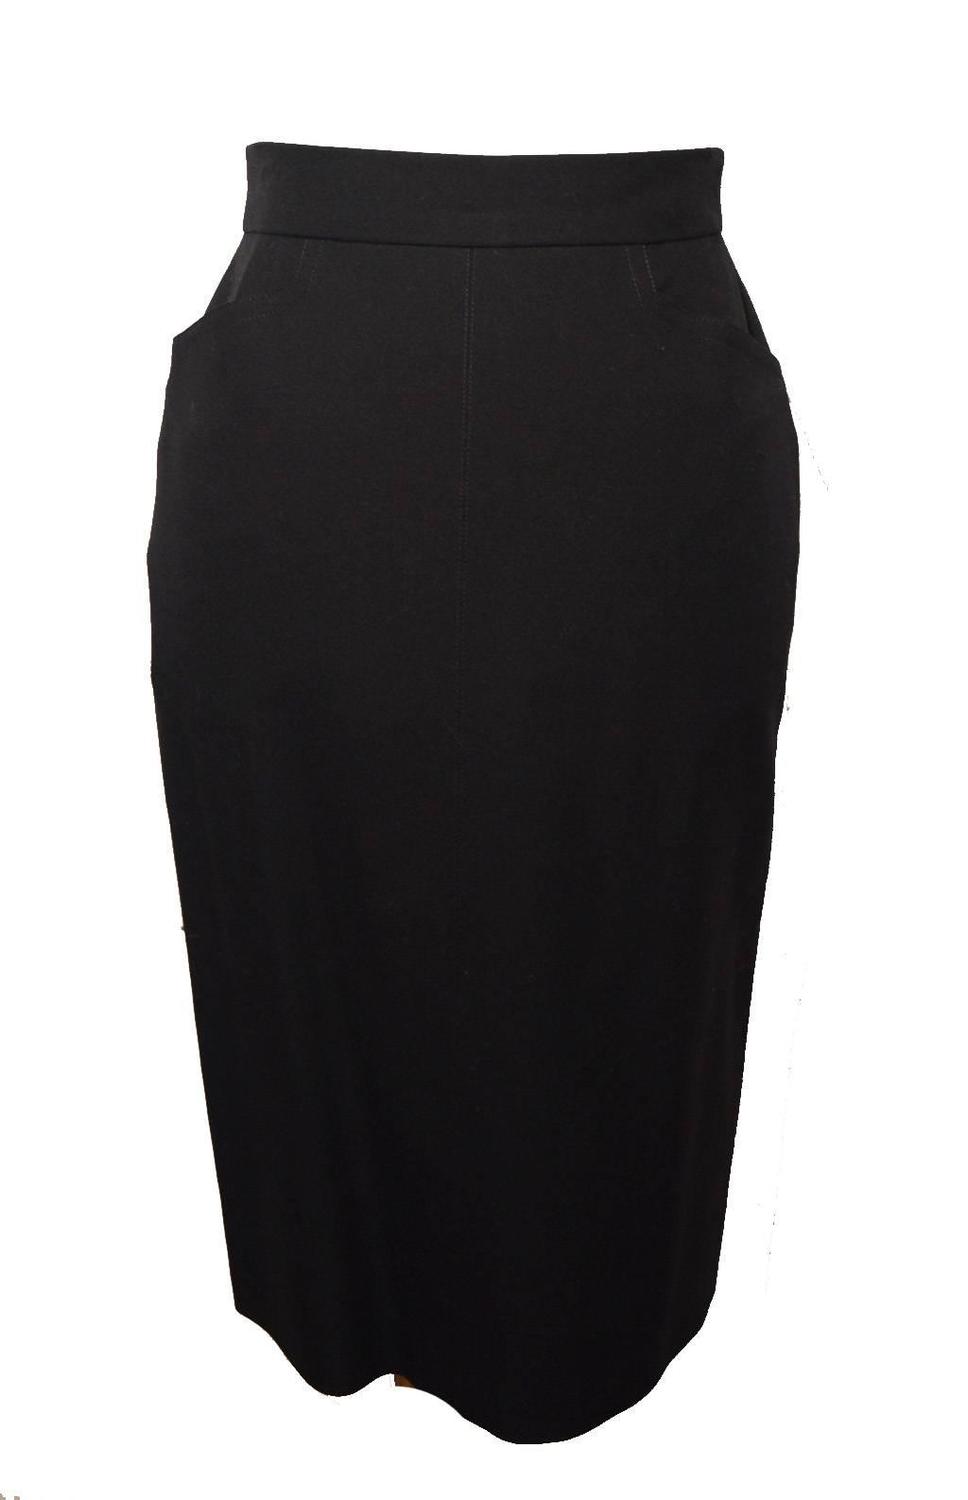 Hermes Vintage Black Wool Skirt Suit 1990's For Sale at 1stdibs